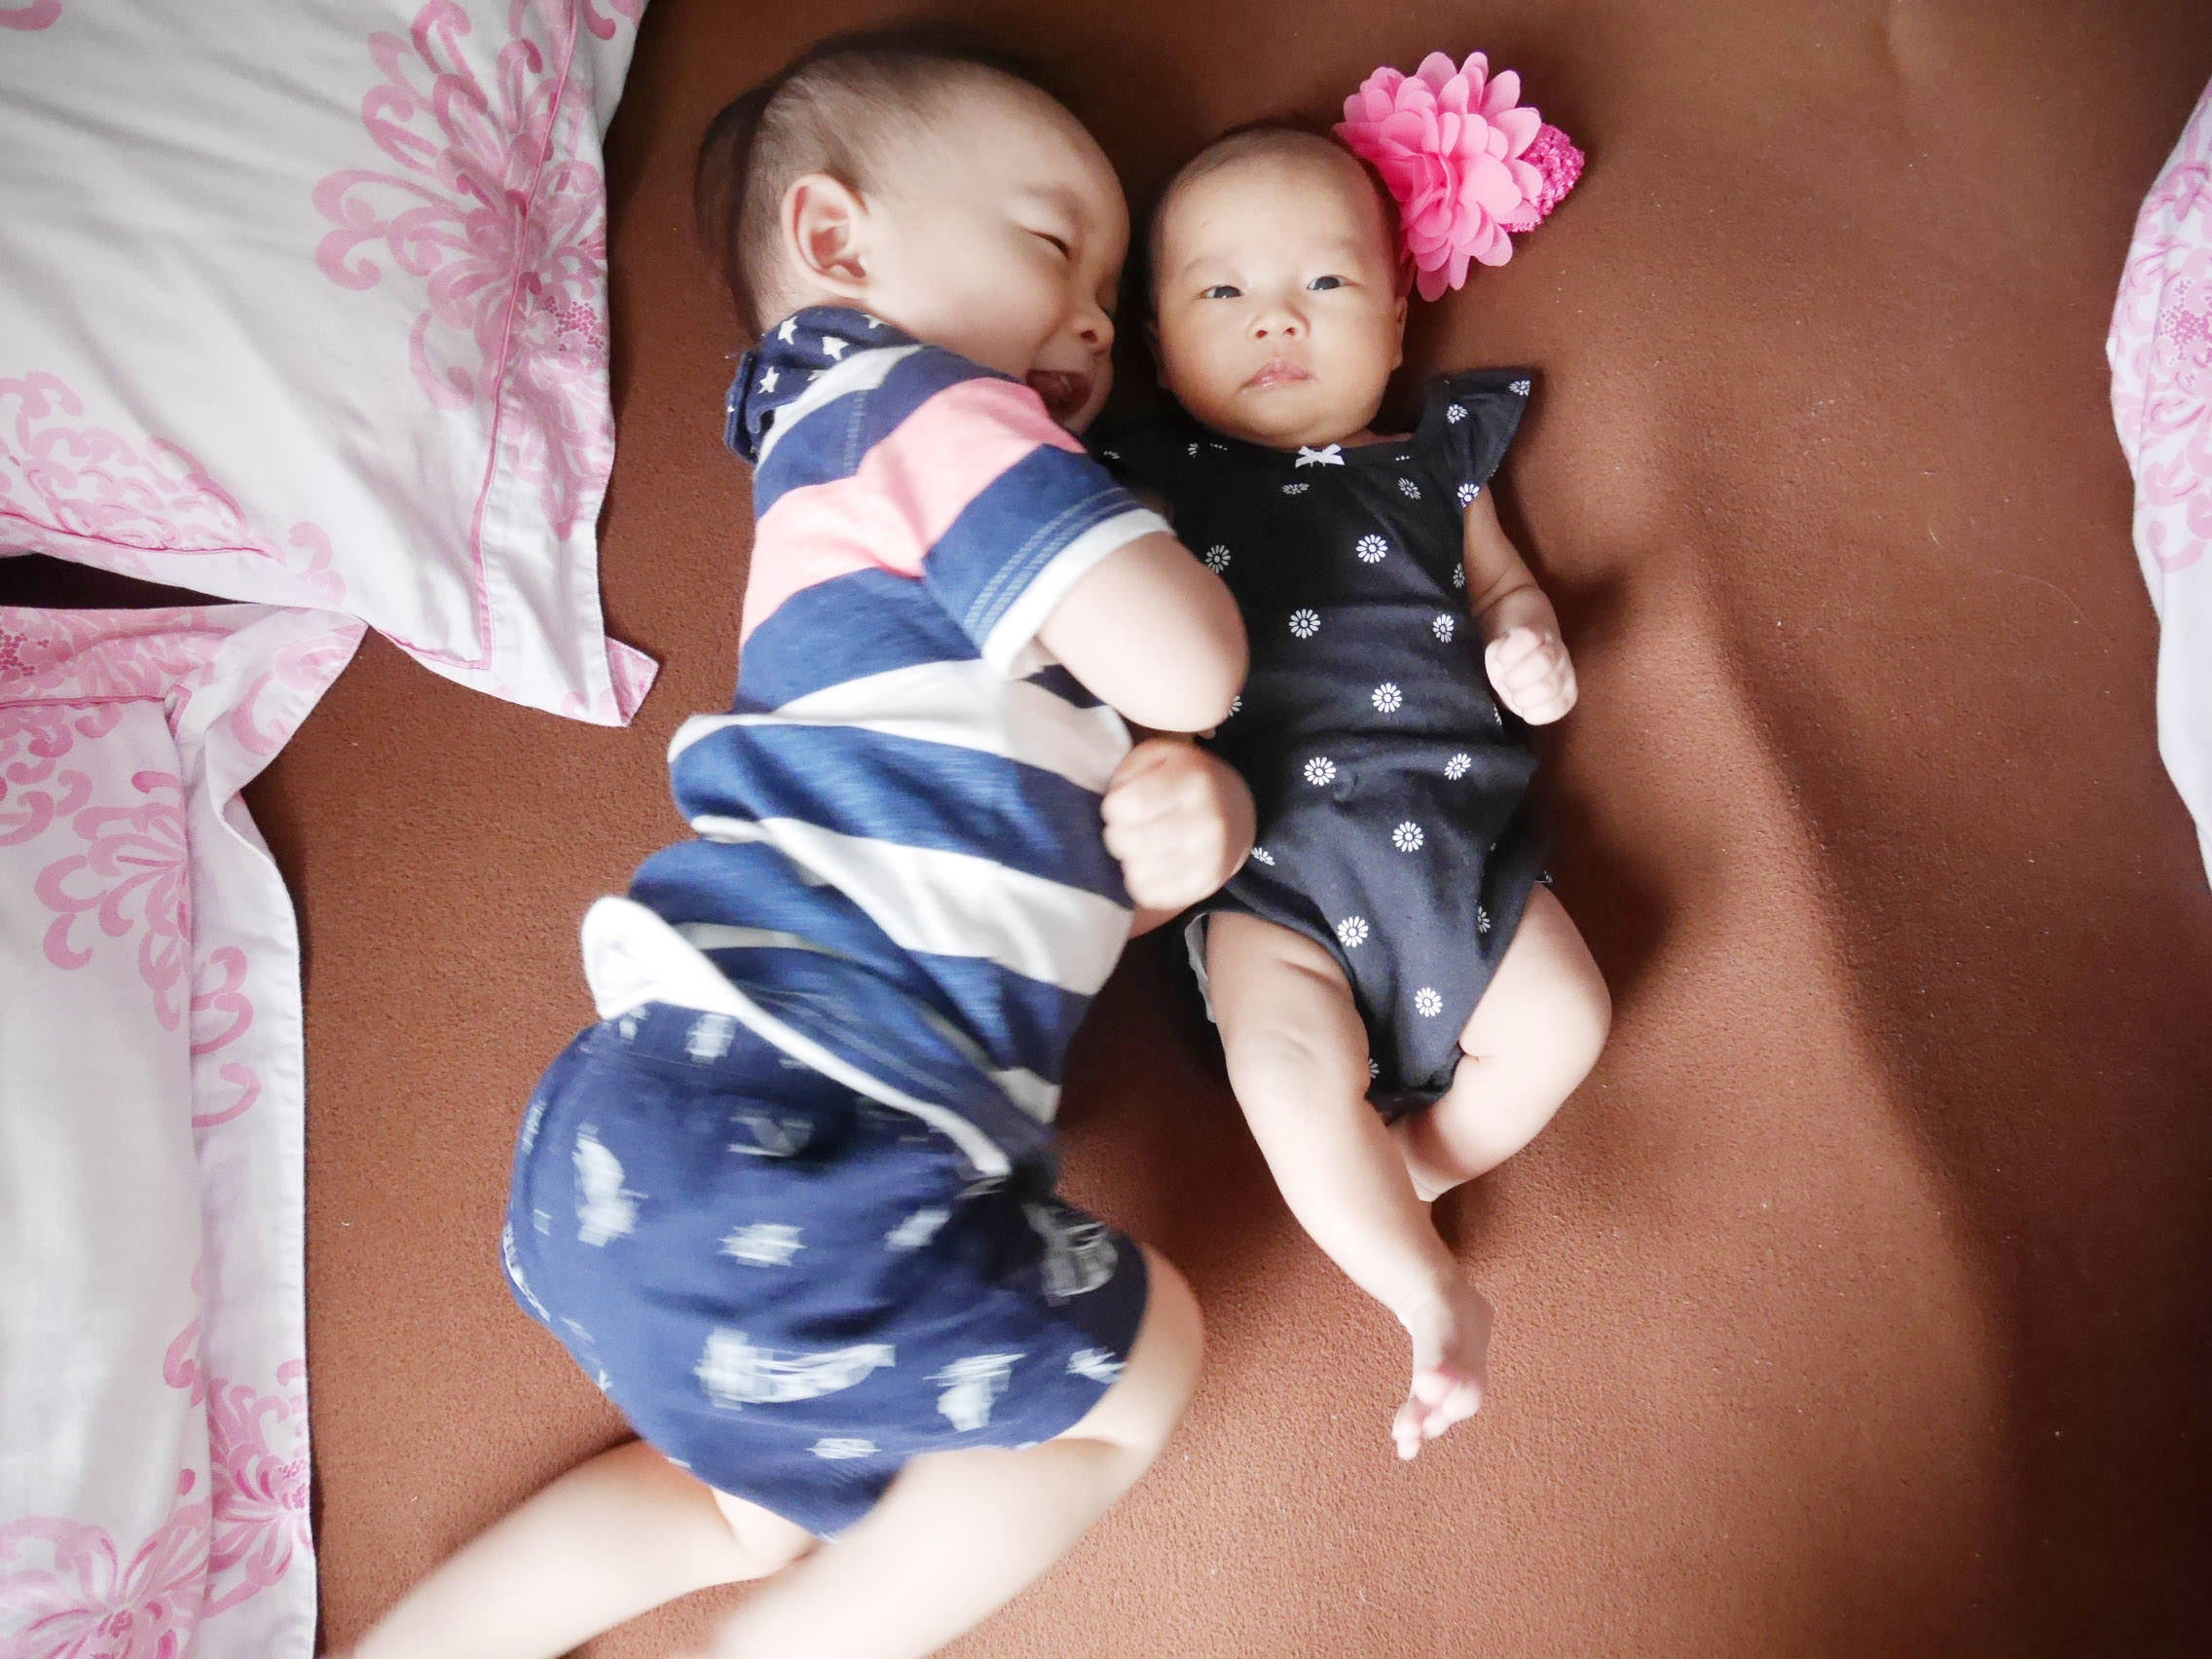 [育兒經] 兩個寶寶的作息調整,養成自行入睡的好習慣-從崩潰中走出來的雙寶媽